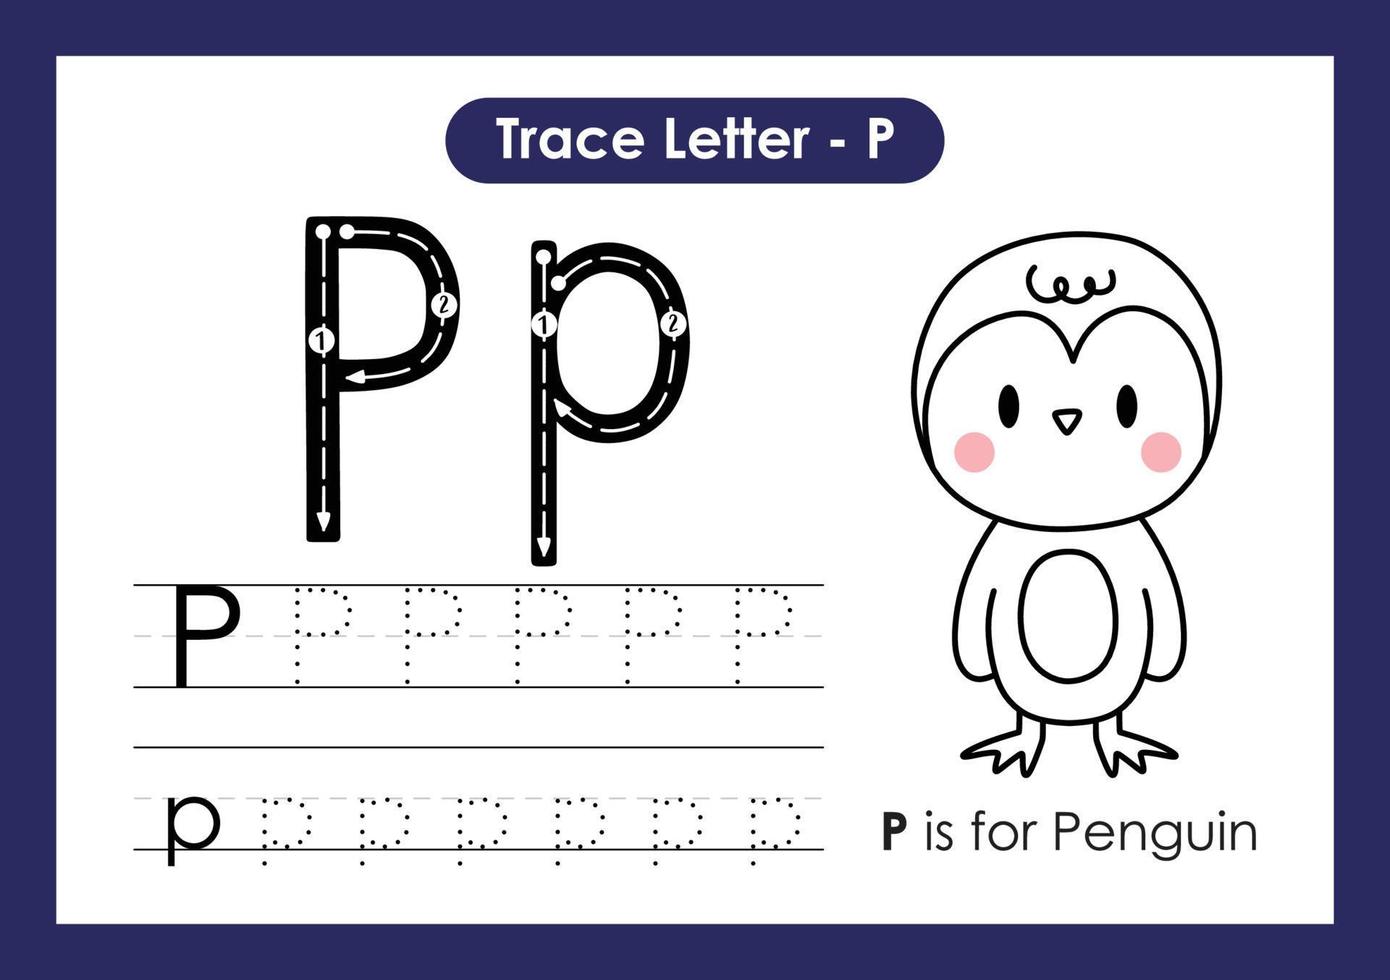 hoja de trabajo preescolar de la letra a a la z del alfabeto con pingüino de la letra p vector